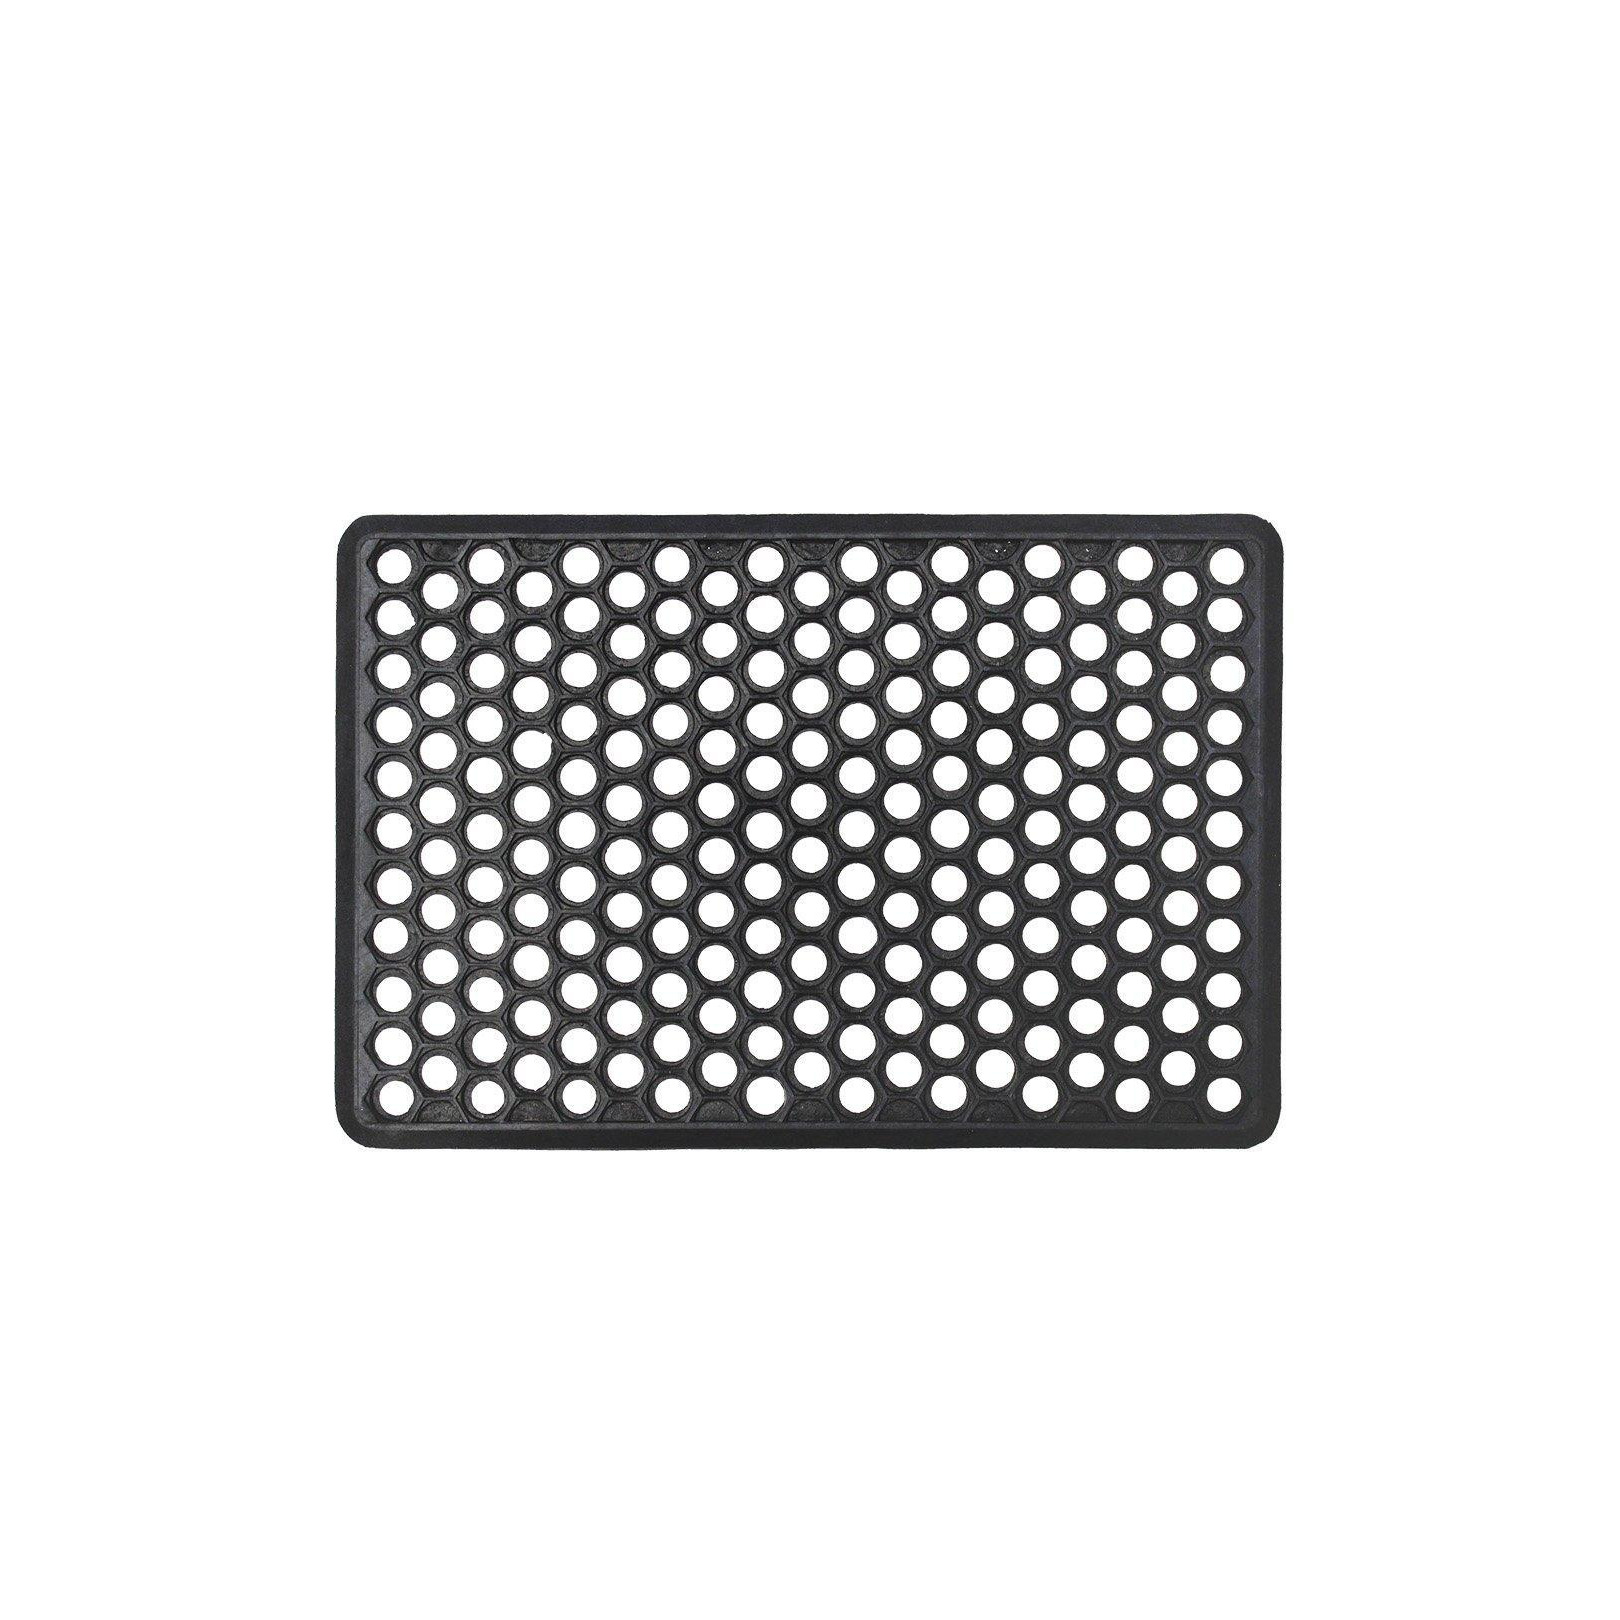 Honeycomb Rubber Ring Scraper Doormat 40x60cm - image 1